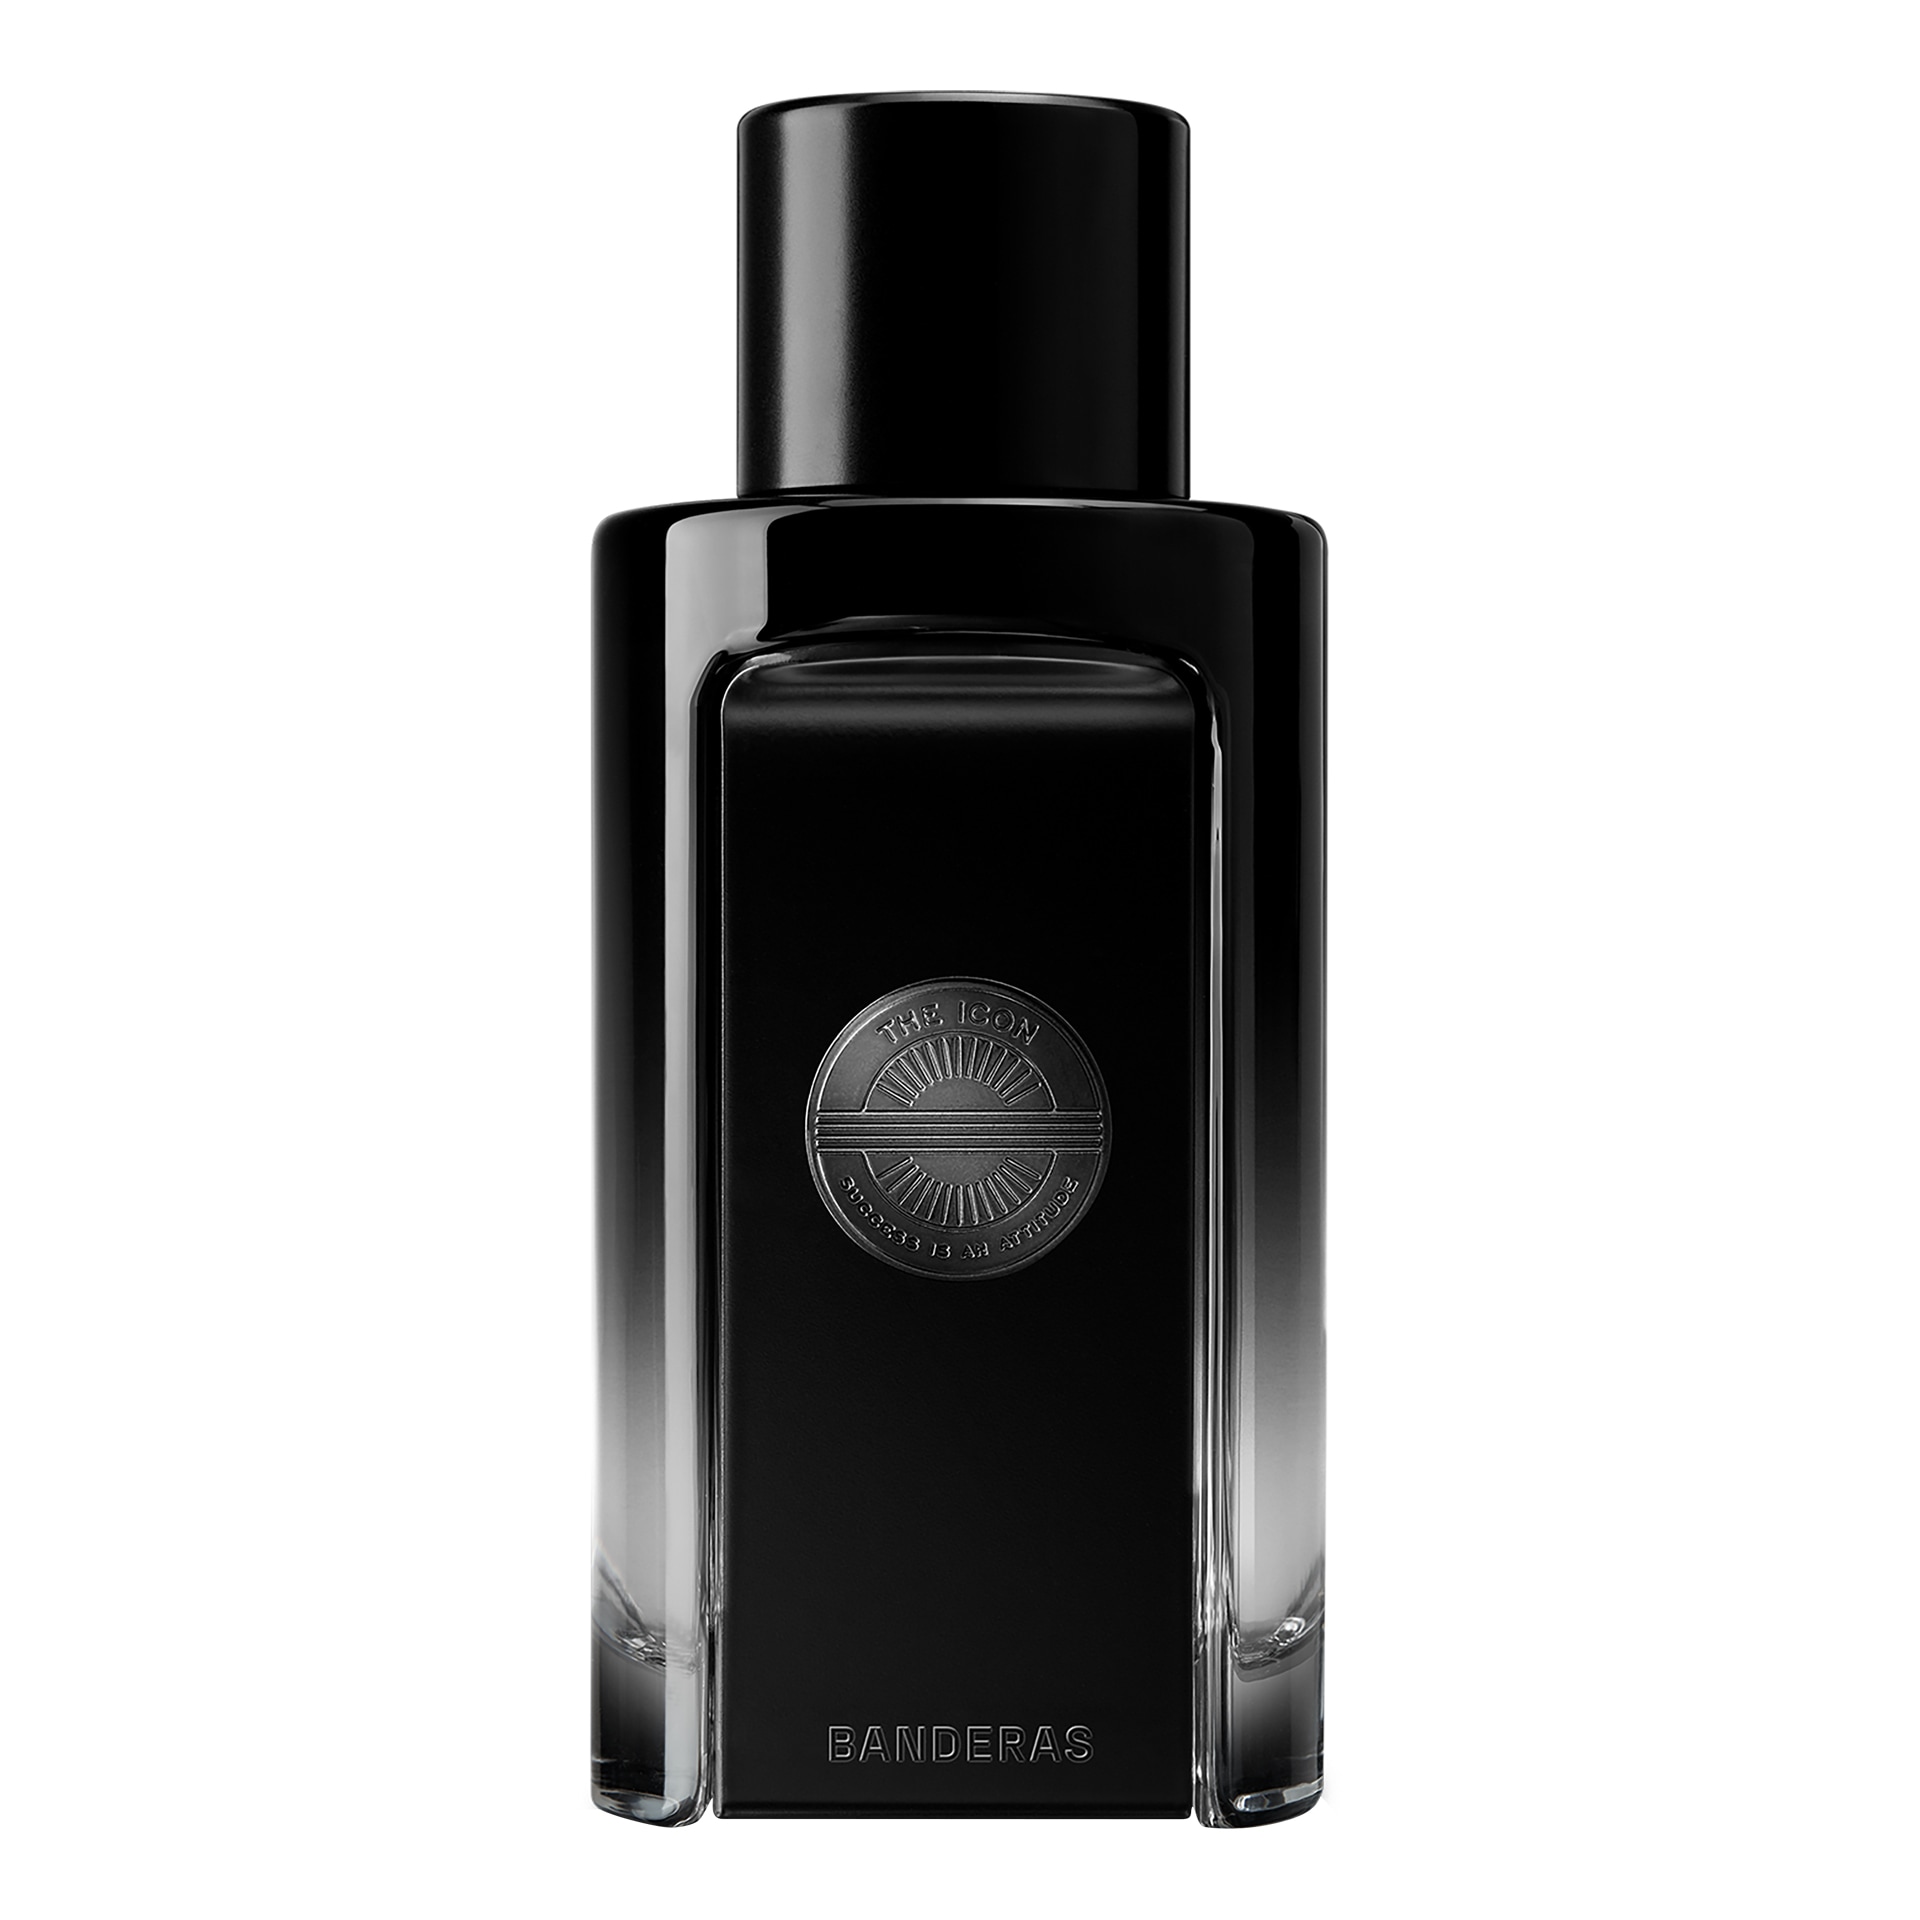 Вода парфюмерная Banderas The Icon Perfume, 100 мл antonio banderas the icon elixir 50